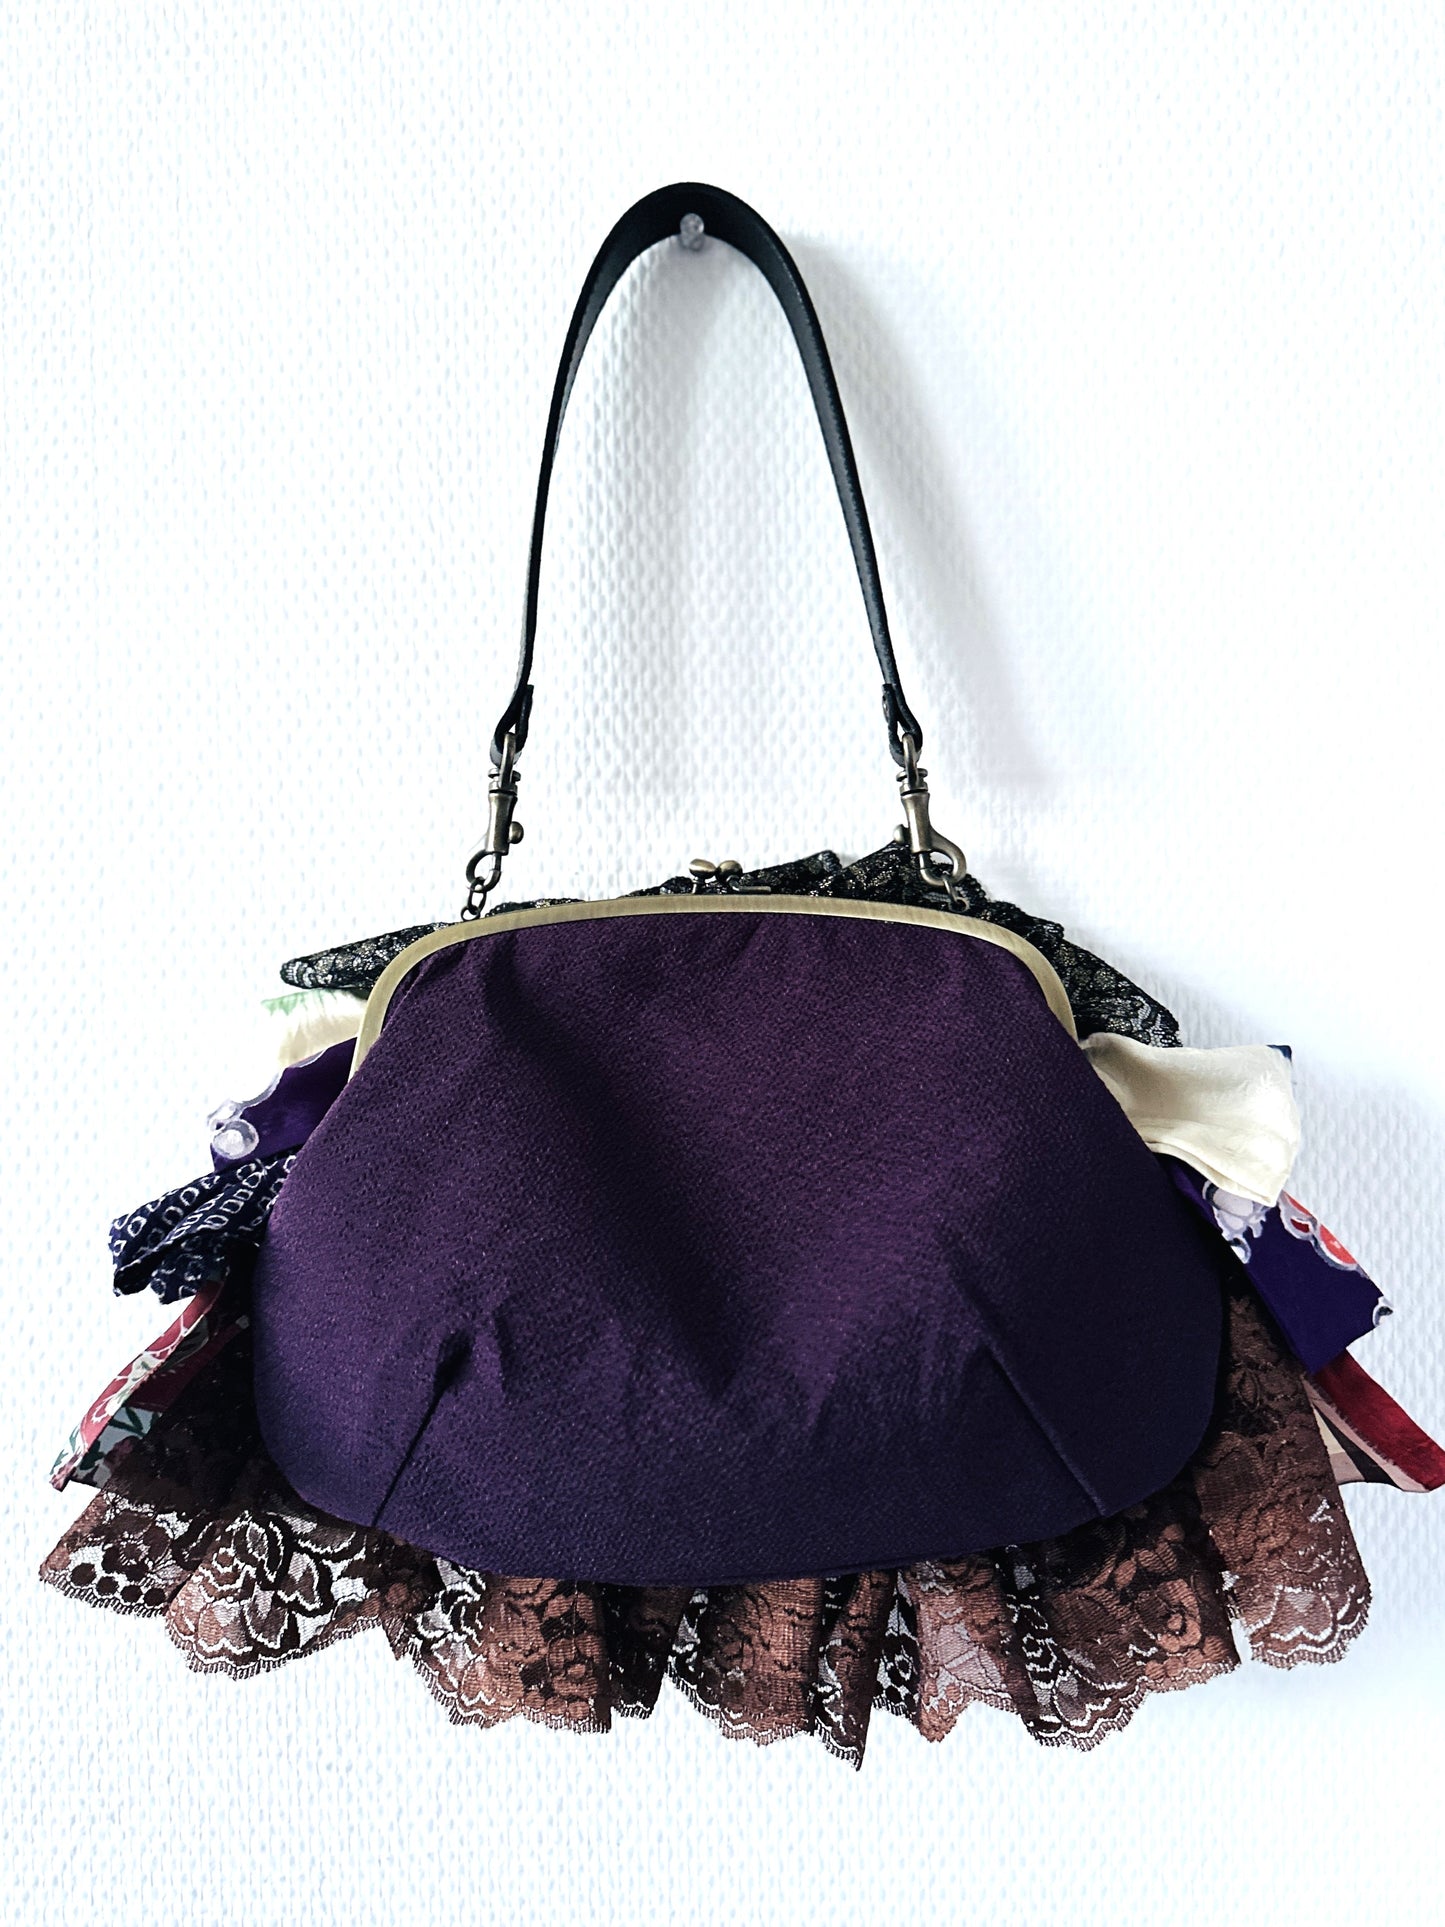 【Gogatsudo】 3way-Handbag/lila, antike Meisen, Schnickschnack, Clutch, Beutel, japanische Tasche, Umhängetasche, japanische Geschenke